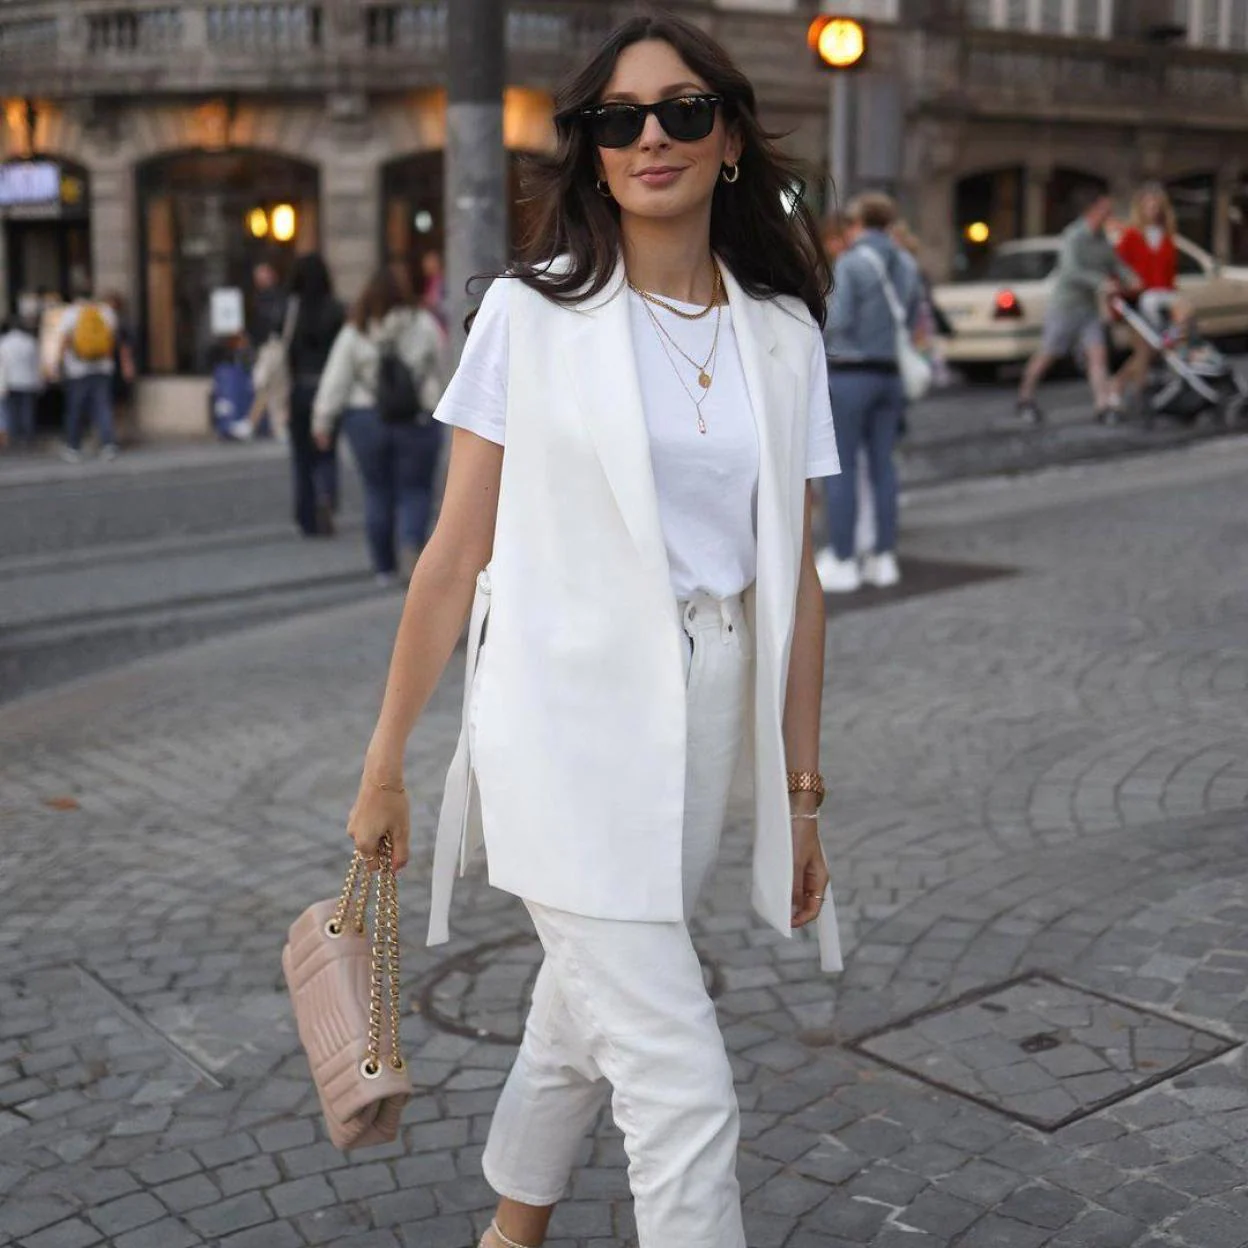 Así se lleva el traje de chaqueta blanco camel), truco estilo de las influencers para ir elegante en verano que rejuvenece | Mujer Hoy